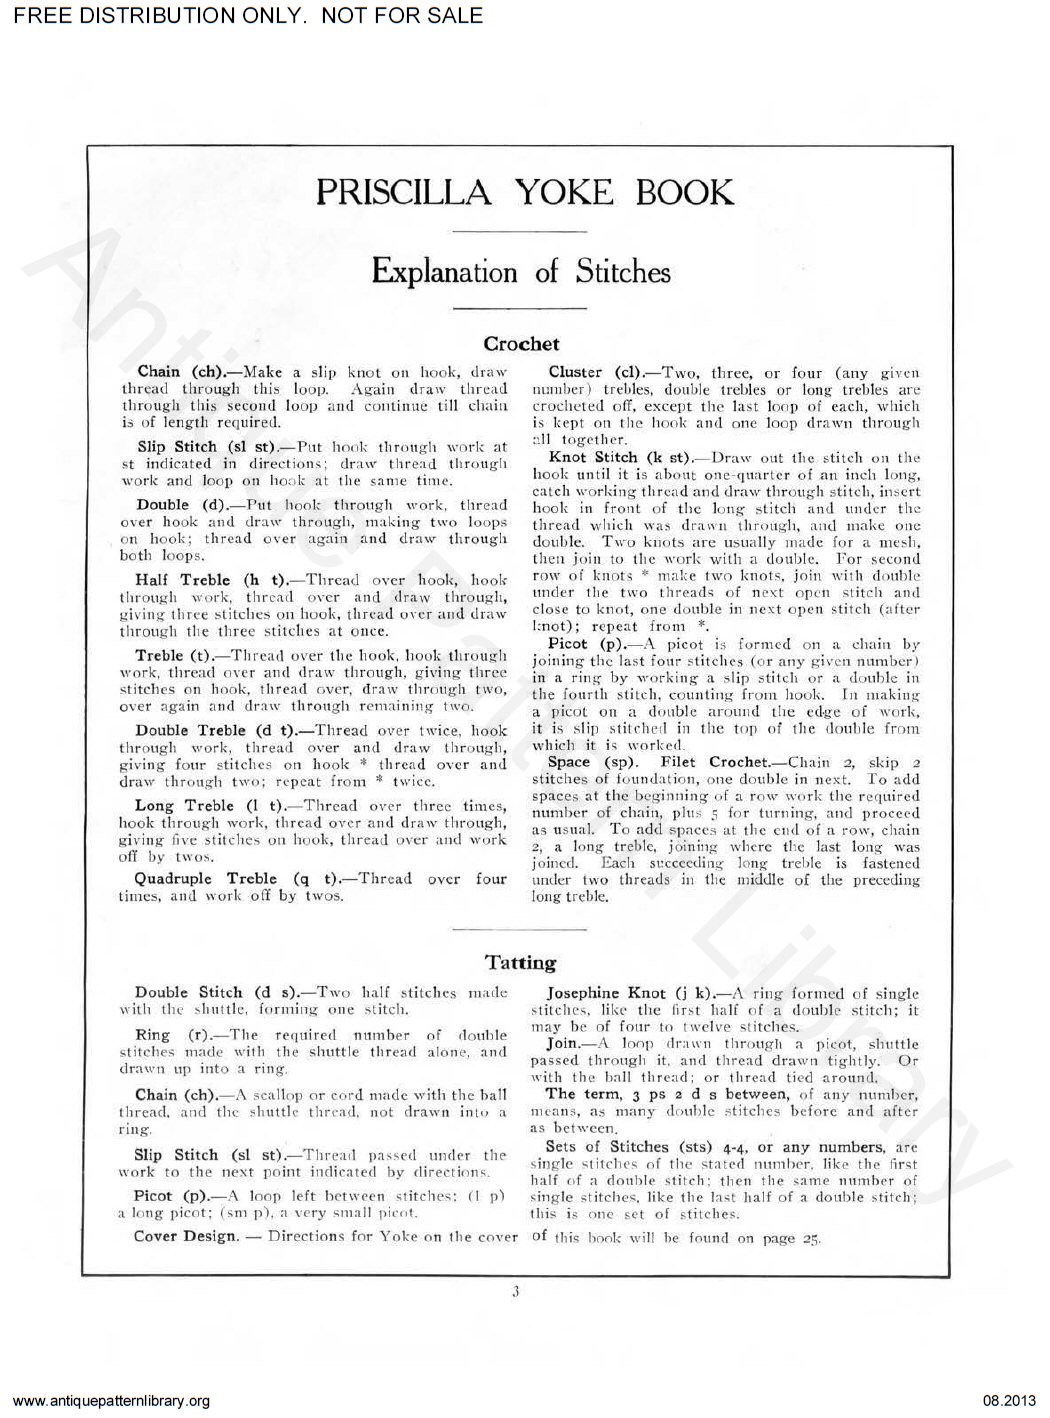 6-GO001 The Priscilla Yoke Book